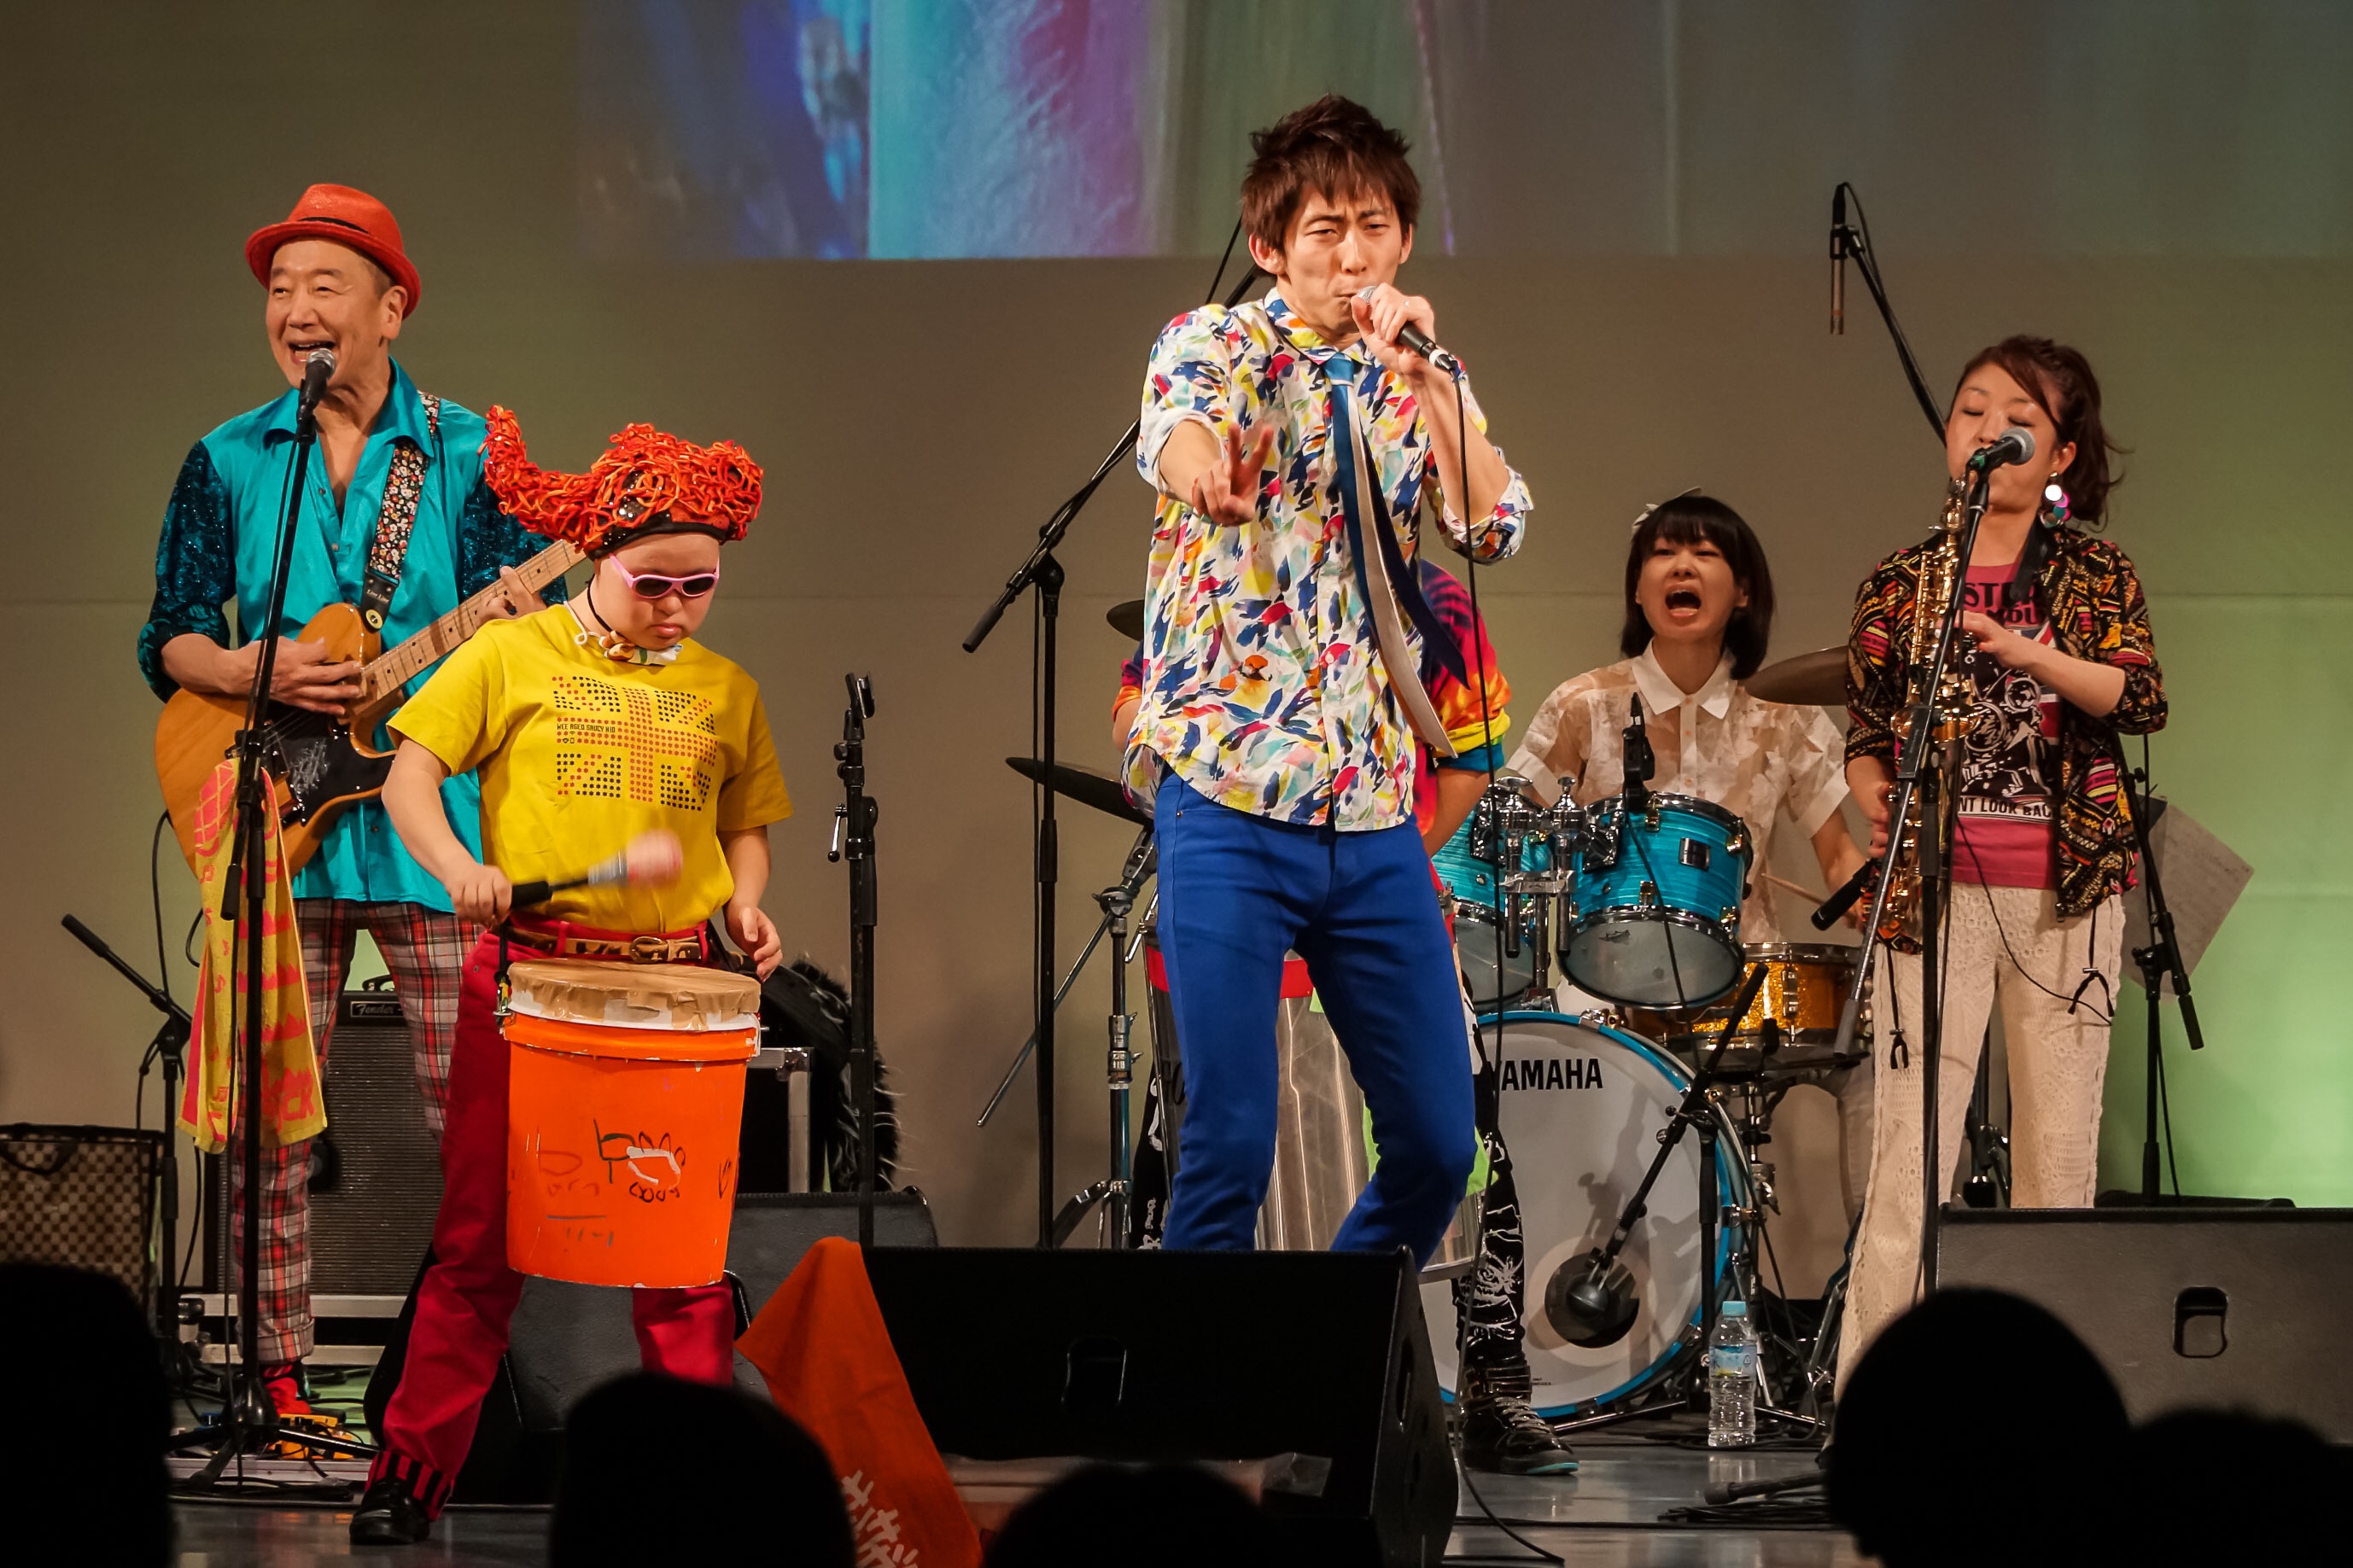   東京2020大会・日本博を契機とした「障害者の文化芸術フェスティバル」グランドオープニング開催！